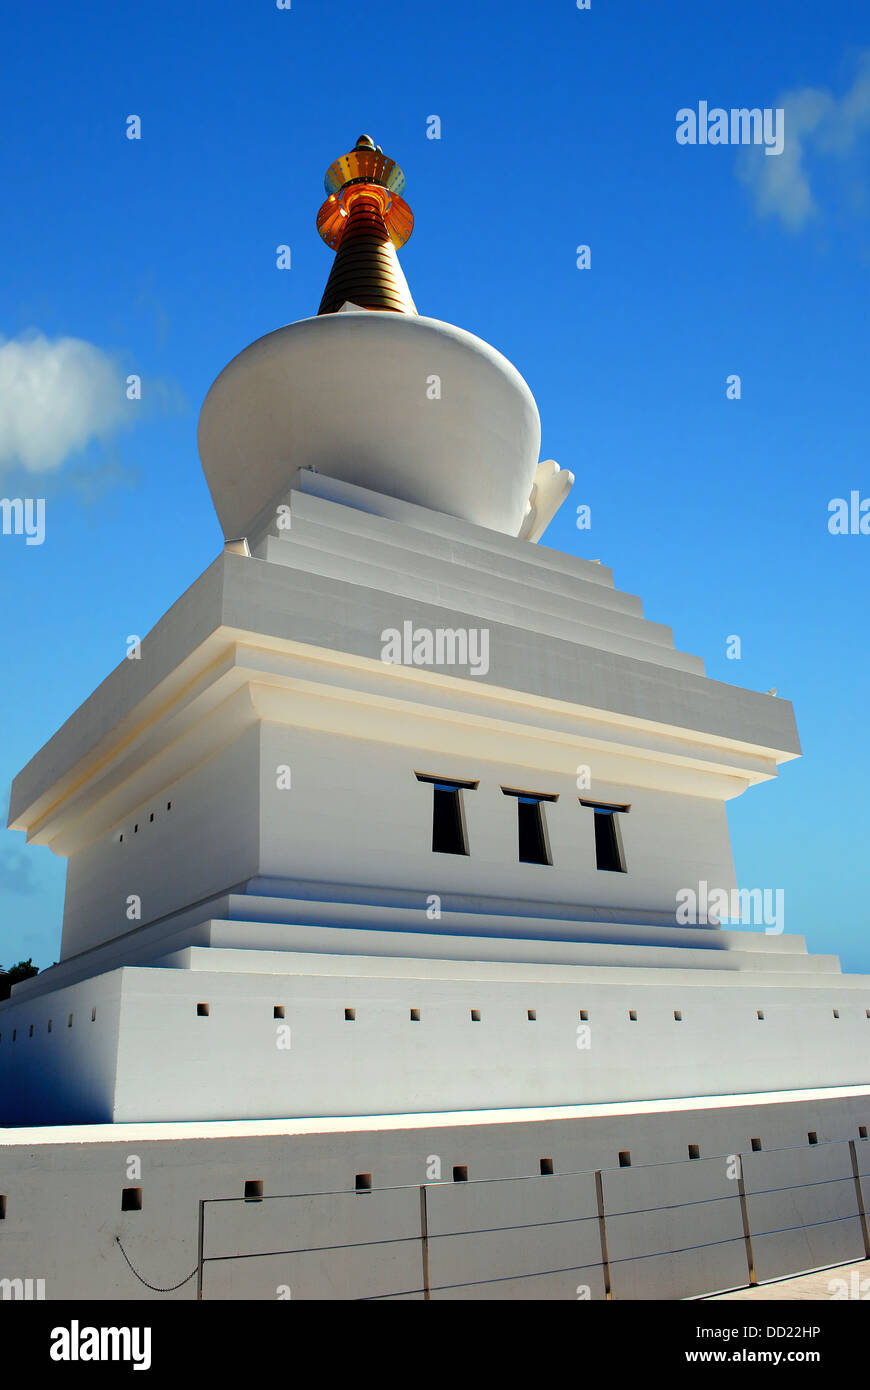 Der buddhistische Tempel in Benalmadena Stockfoto